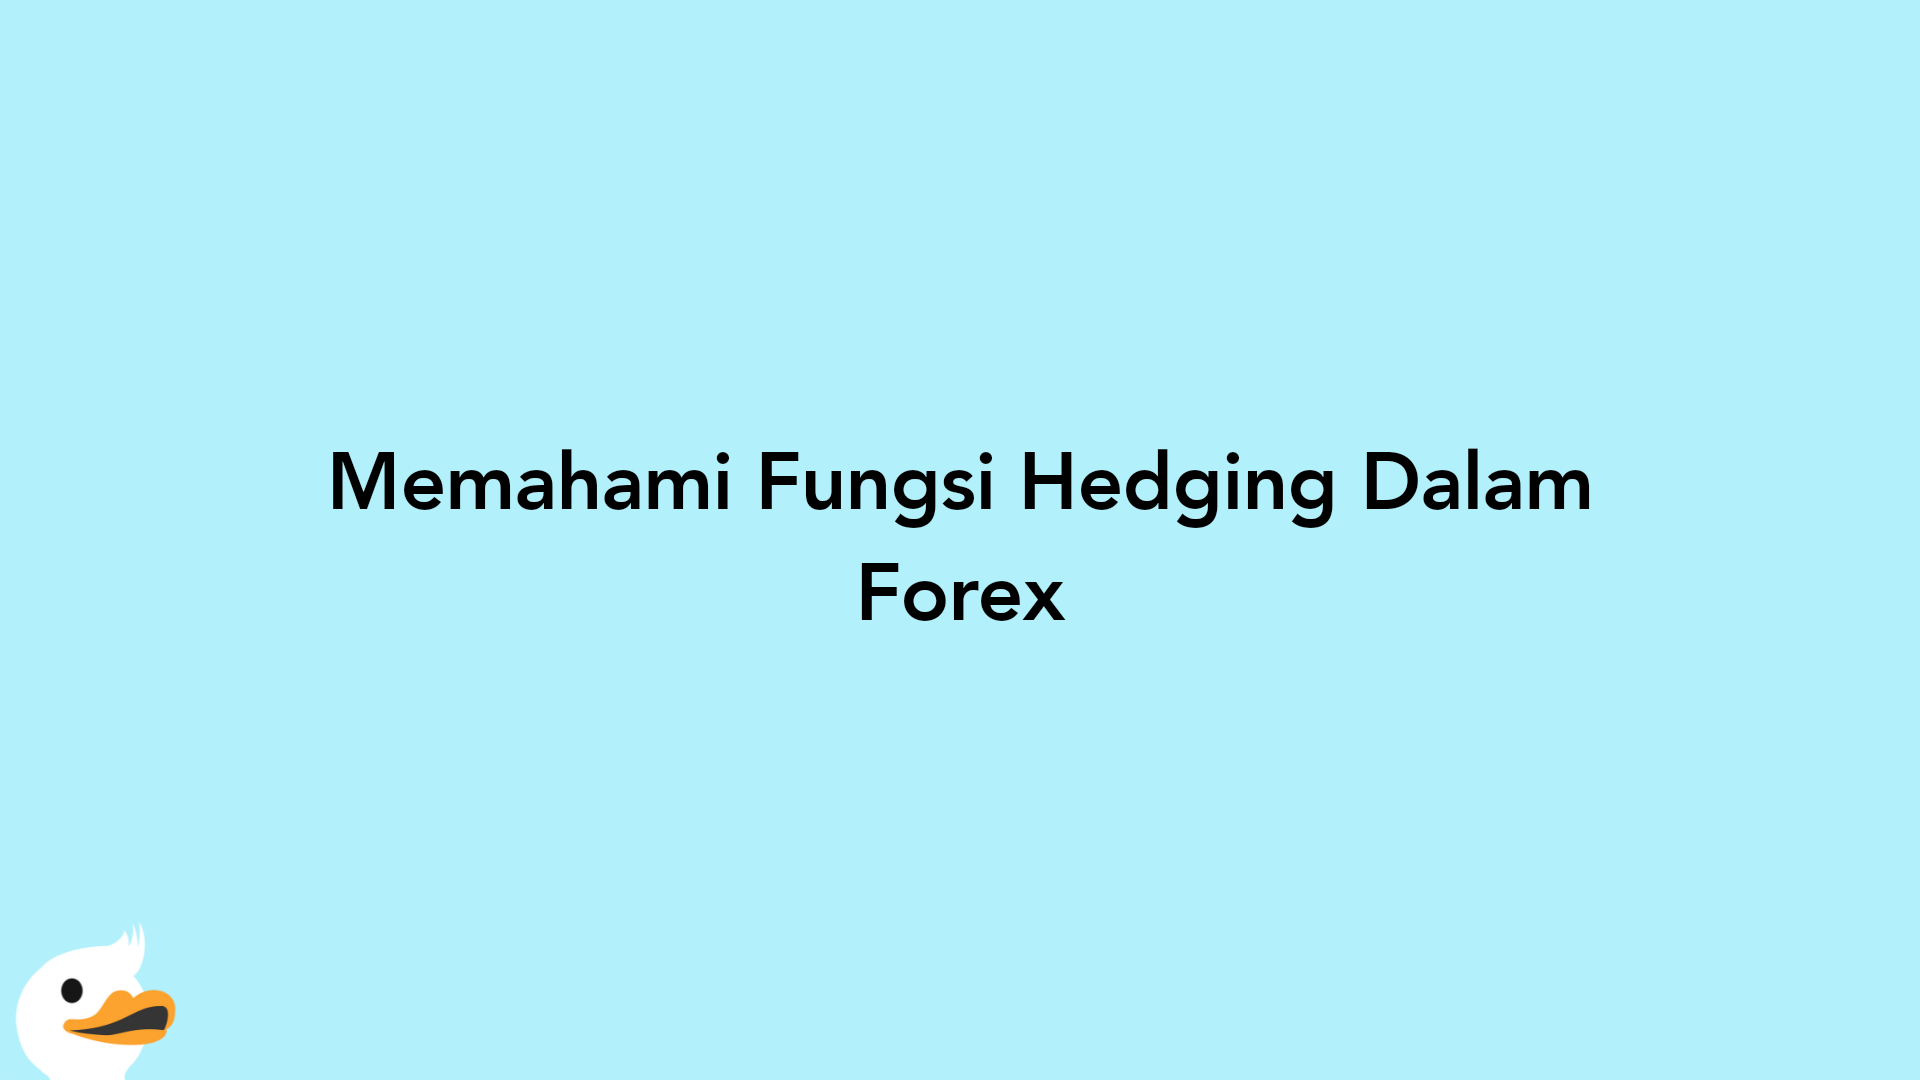 Memahami Fungsi Hedging Dalam Forex